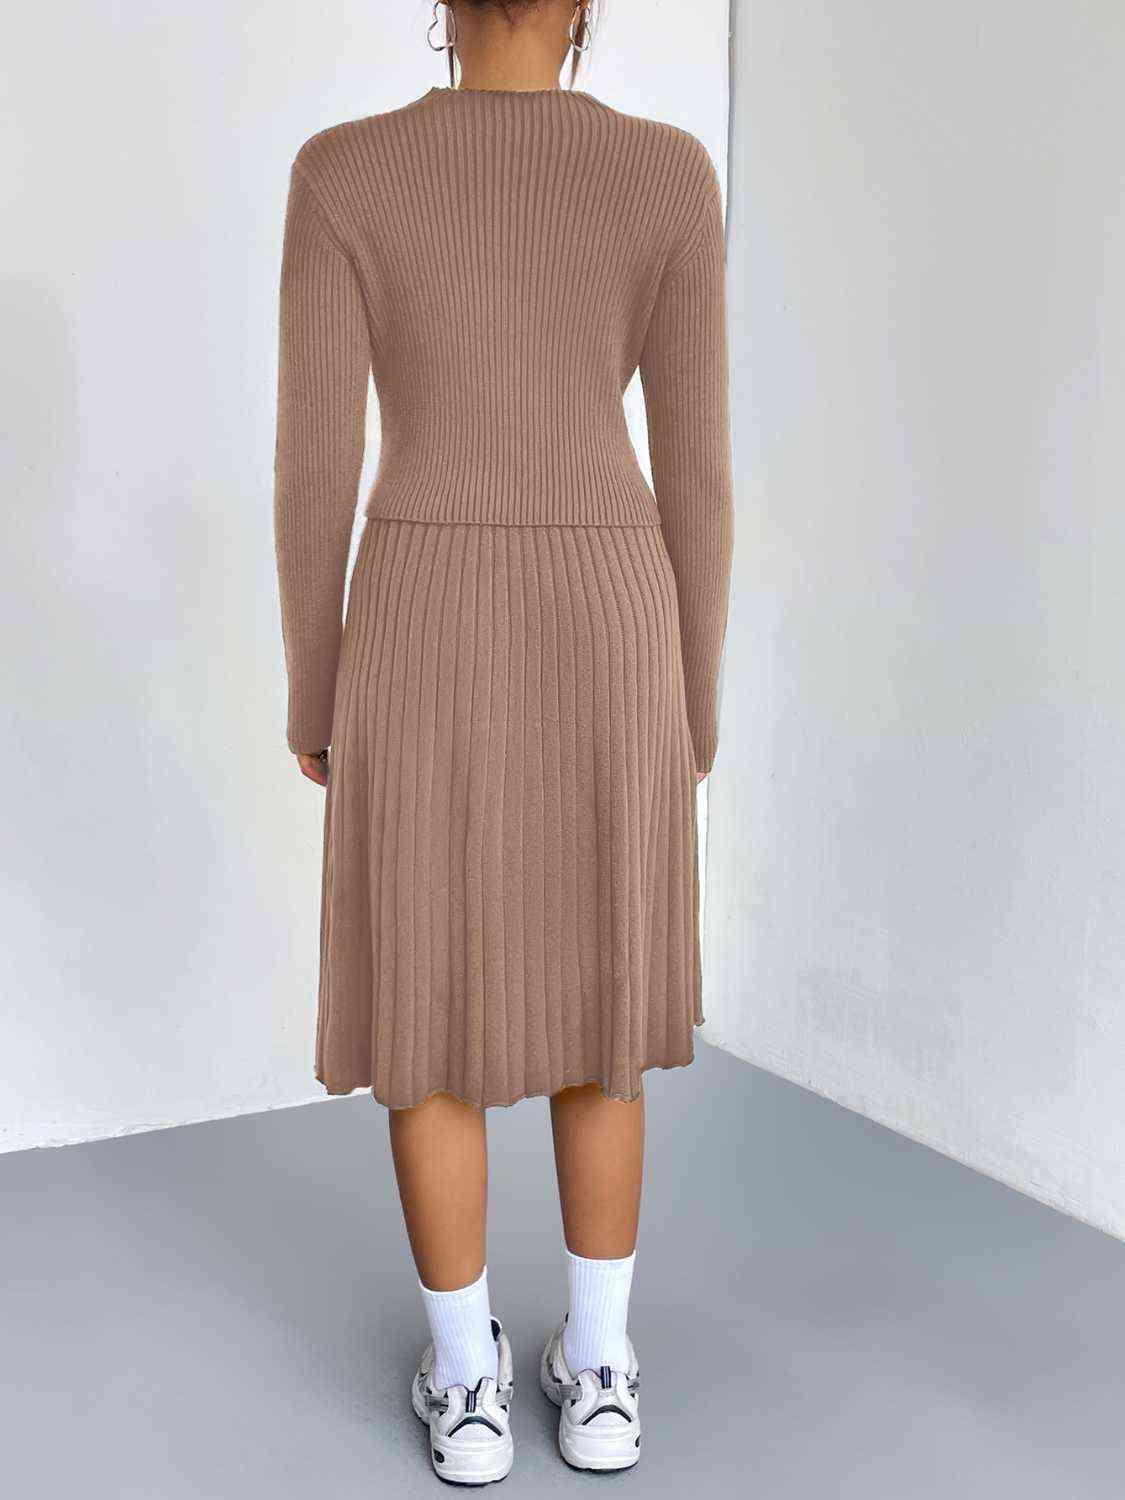 Women's Rib-Knit Sweater and Skirt Set